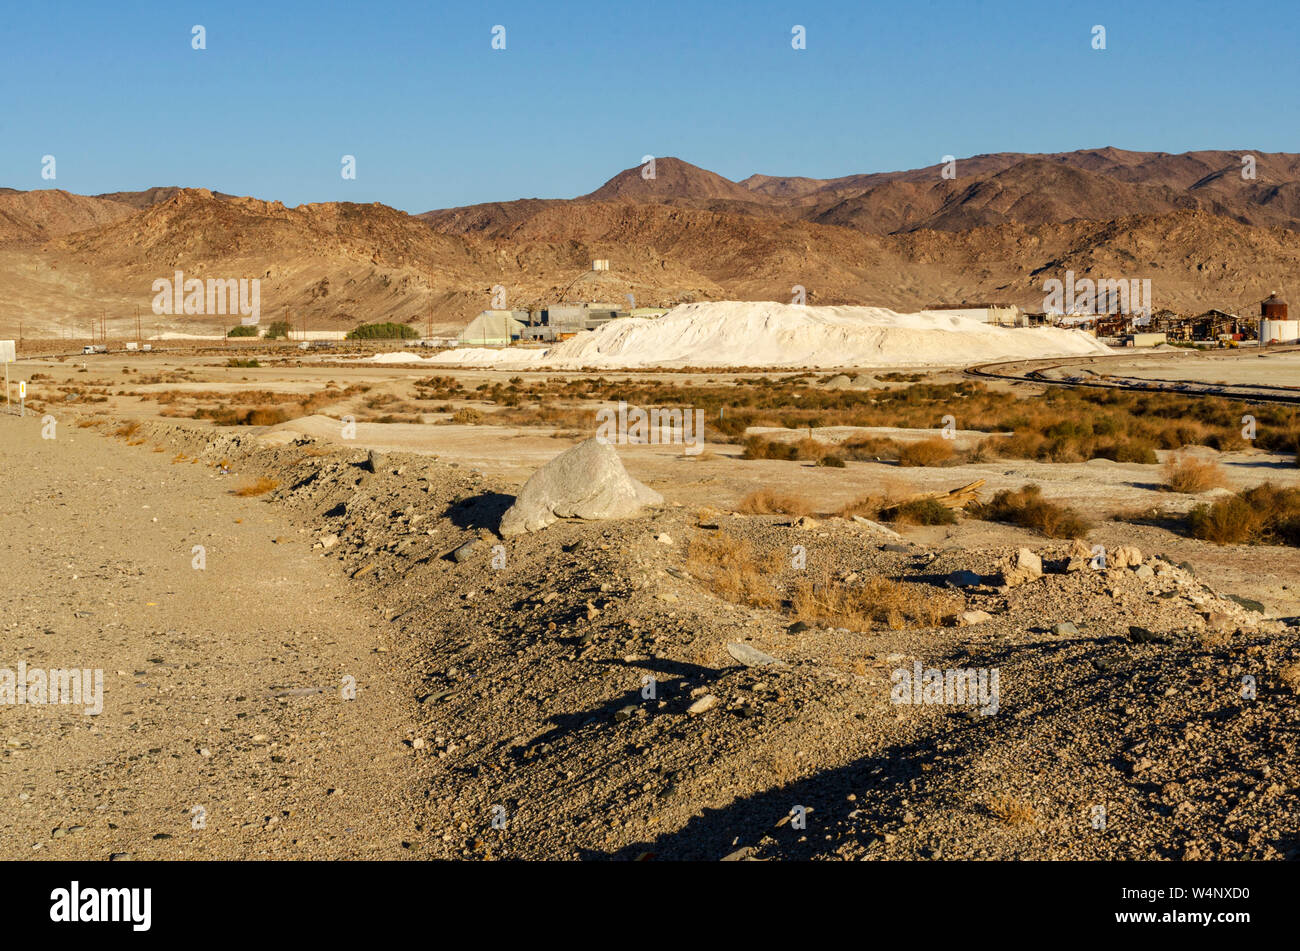 Route de terre menant vers les montagnes du désert aride sous un ciel bleu, sable blanc comme des piles de dire et la ville au loin. Banque D'Images